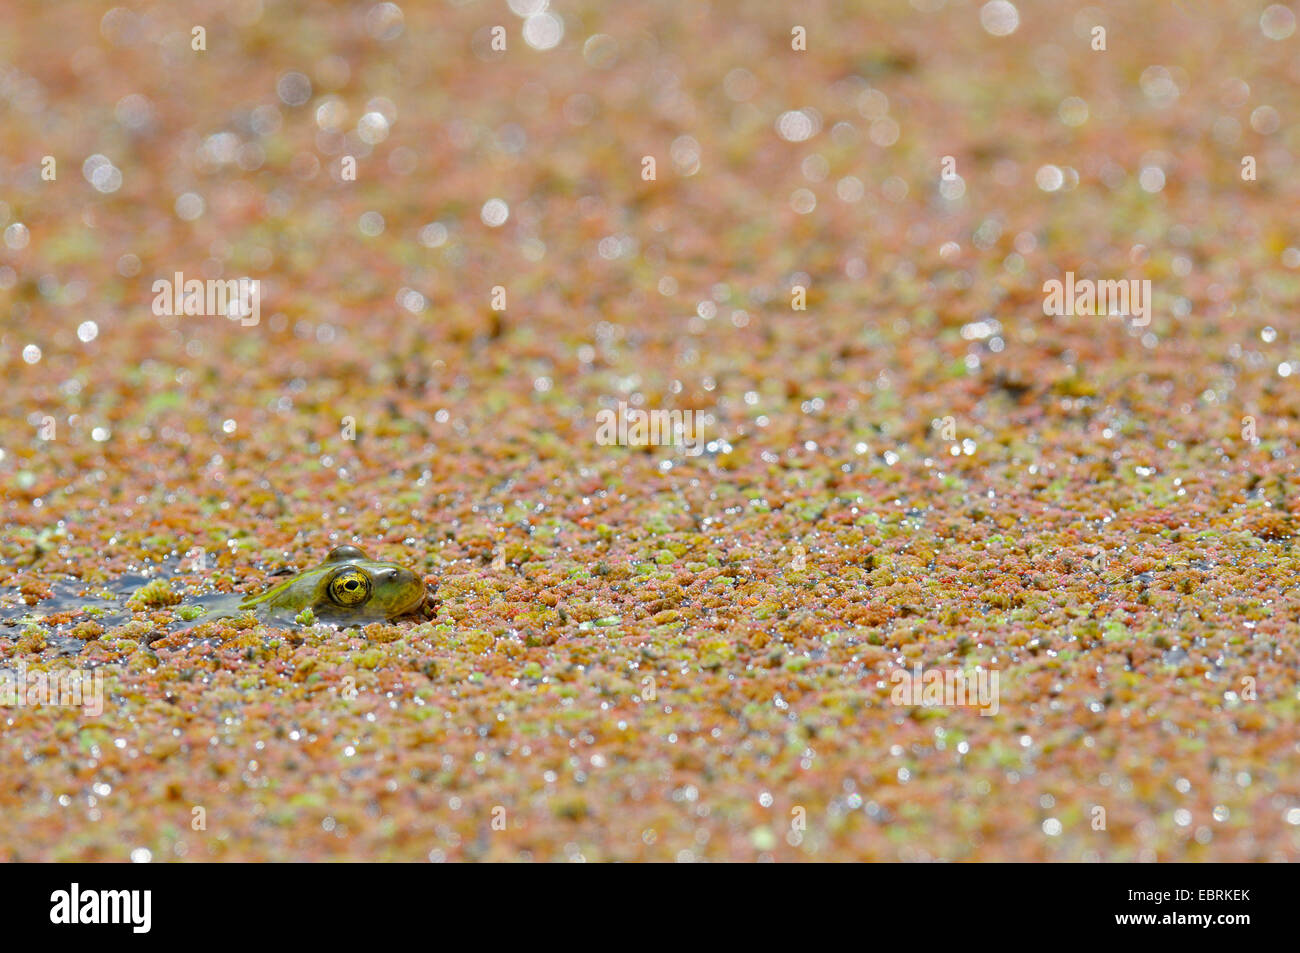 Europäische essbare Frosch, essbare Grasfrosch (Rana kl. Esculenta, Rana Esculenta, außer Esculentus), jungen Frosch an der Oberfläche eines Teiches bedeckt mit Azolla, Germany, North Rhine-Westphalia Stockfoto